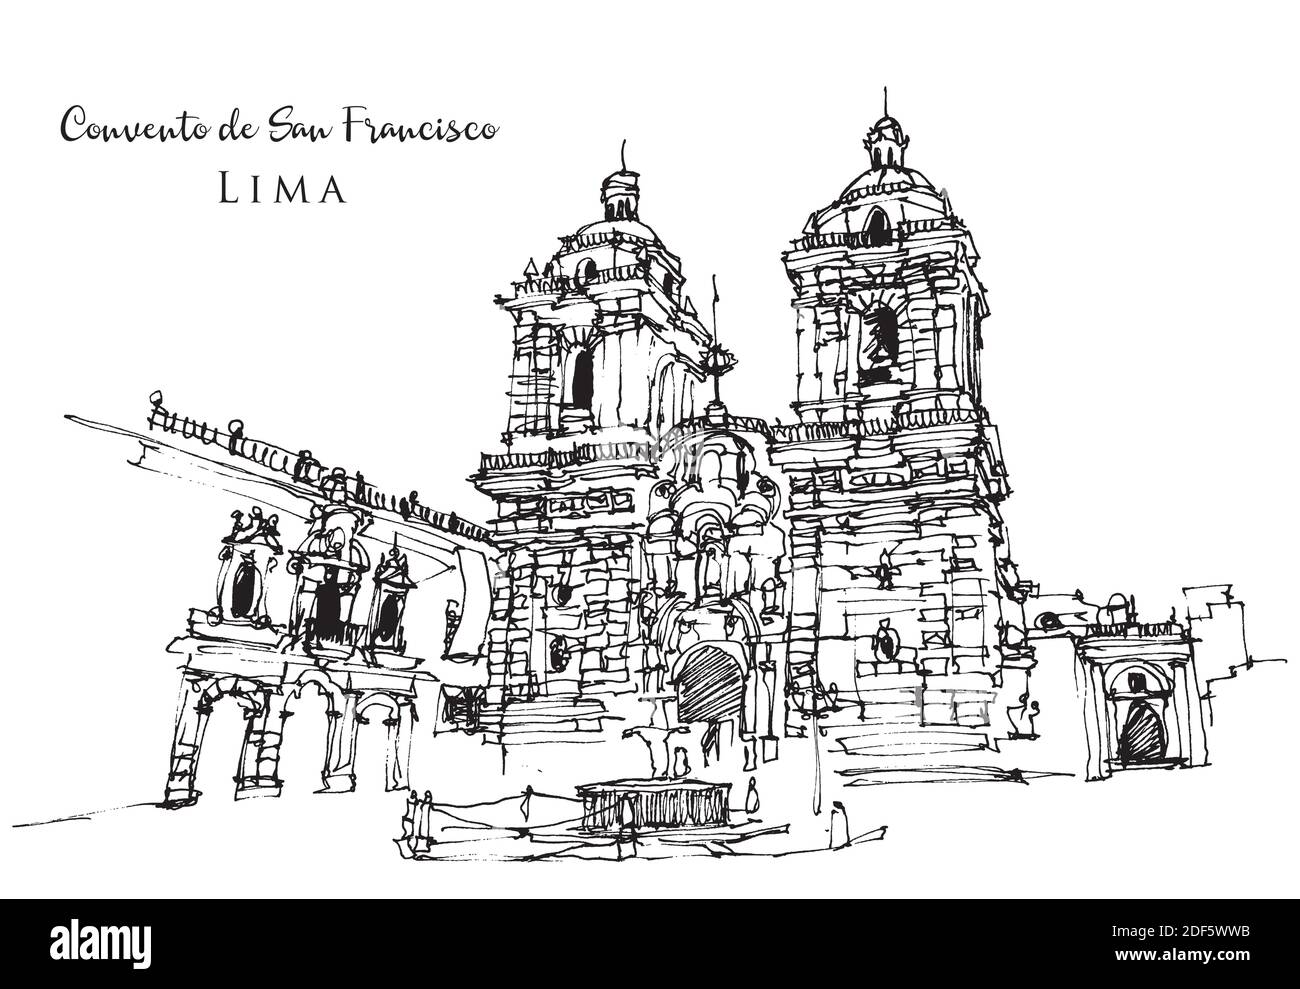 Vector hand drawn sketch illustration of Convento de San Francisco in Lima, Peru Stock Vector